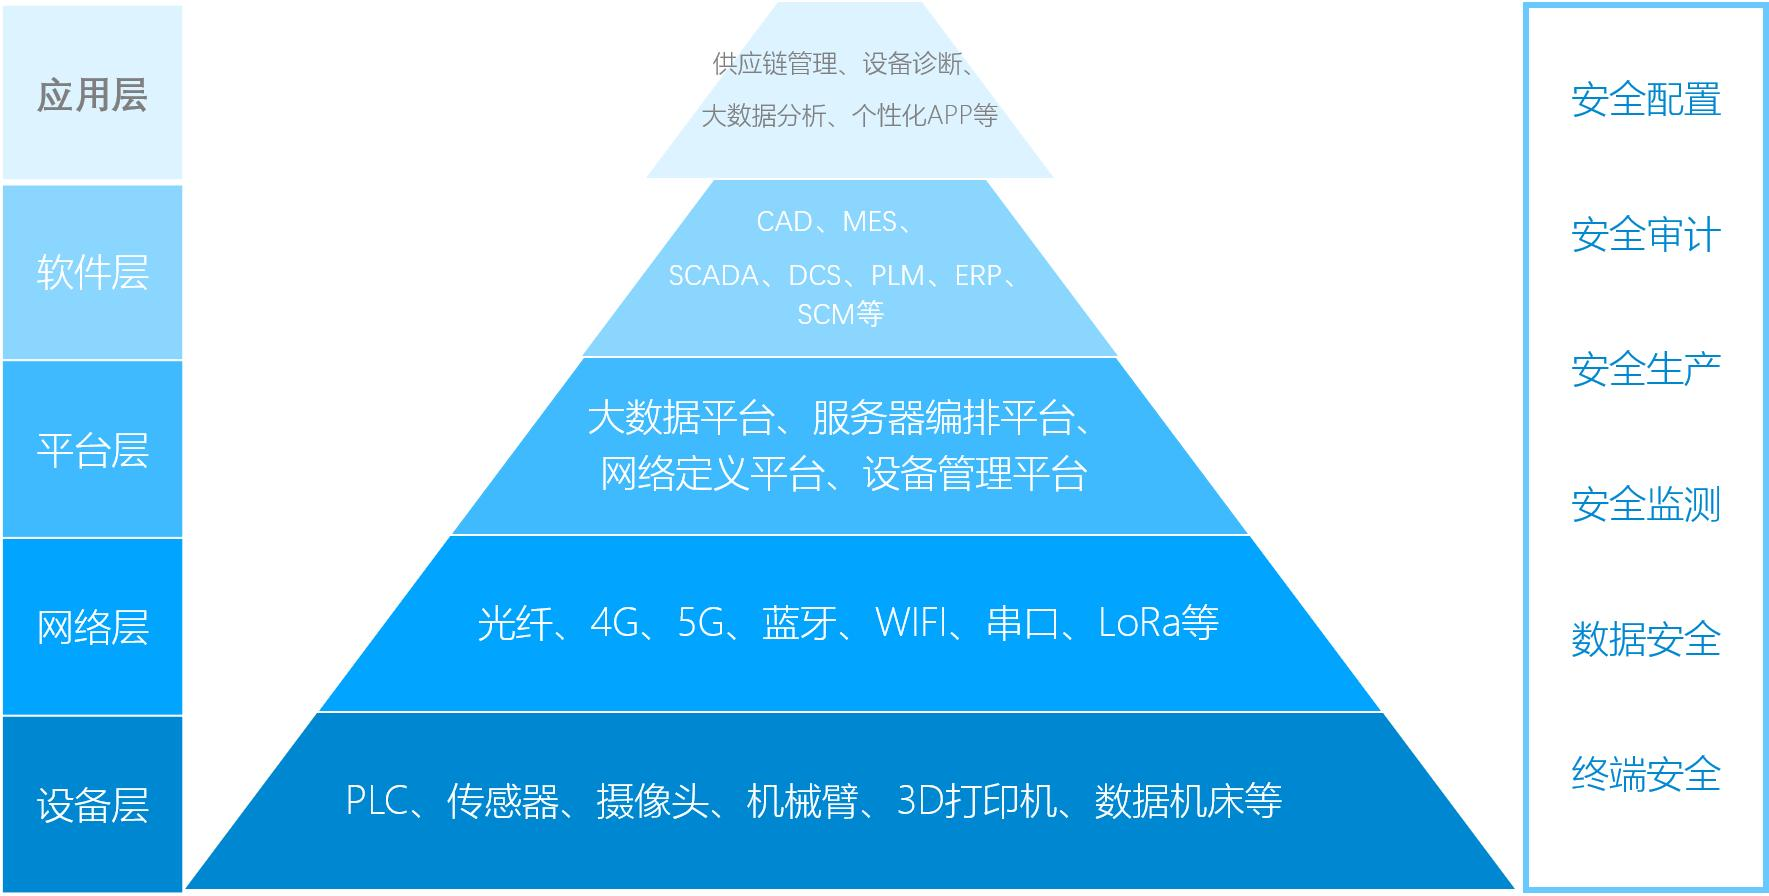 中国IIoT工业物联网与工业互联网的典型架构